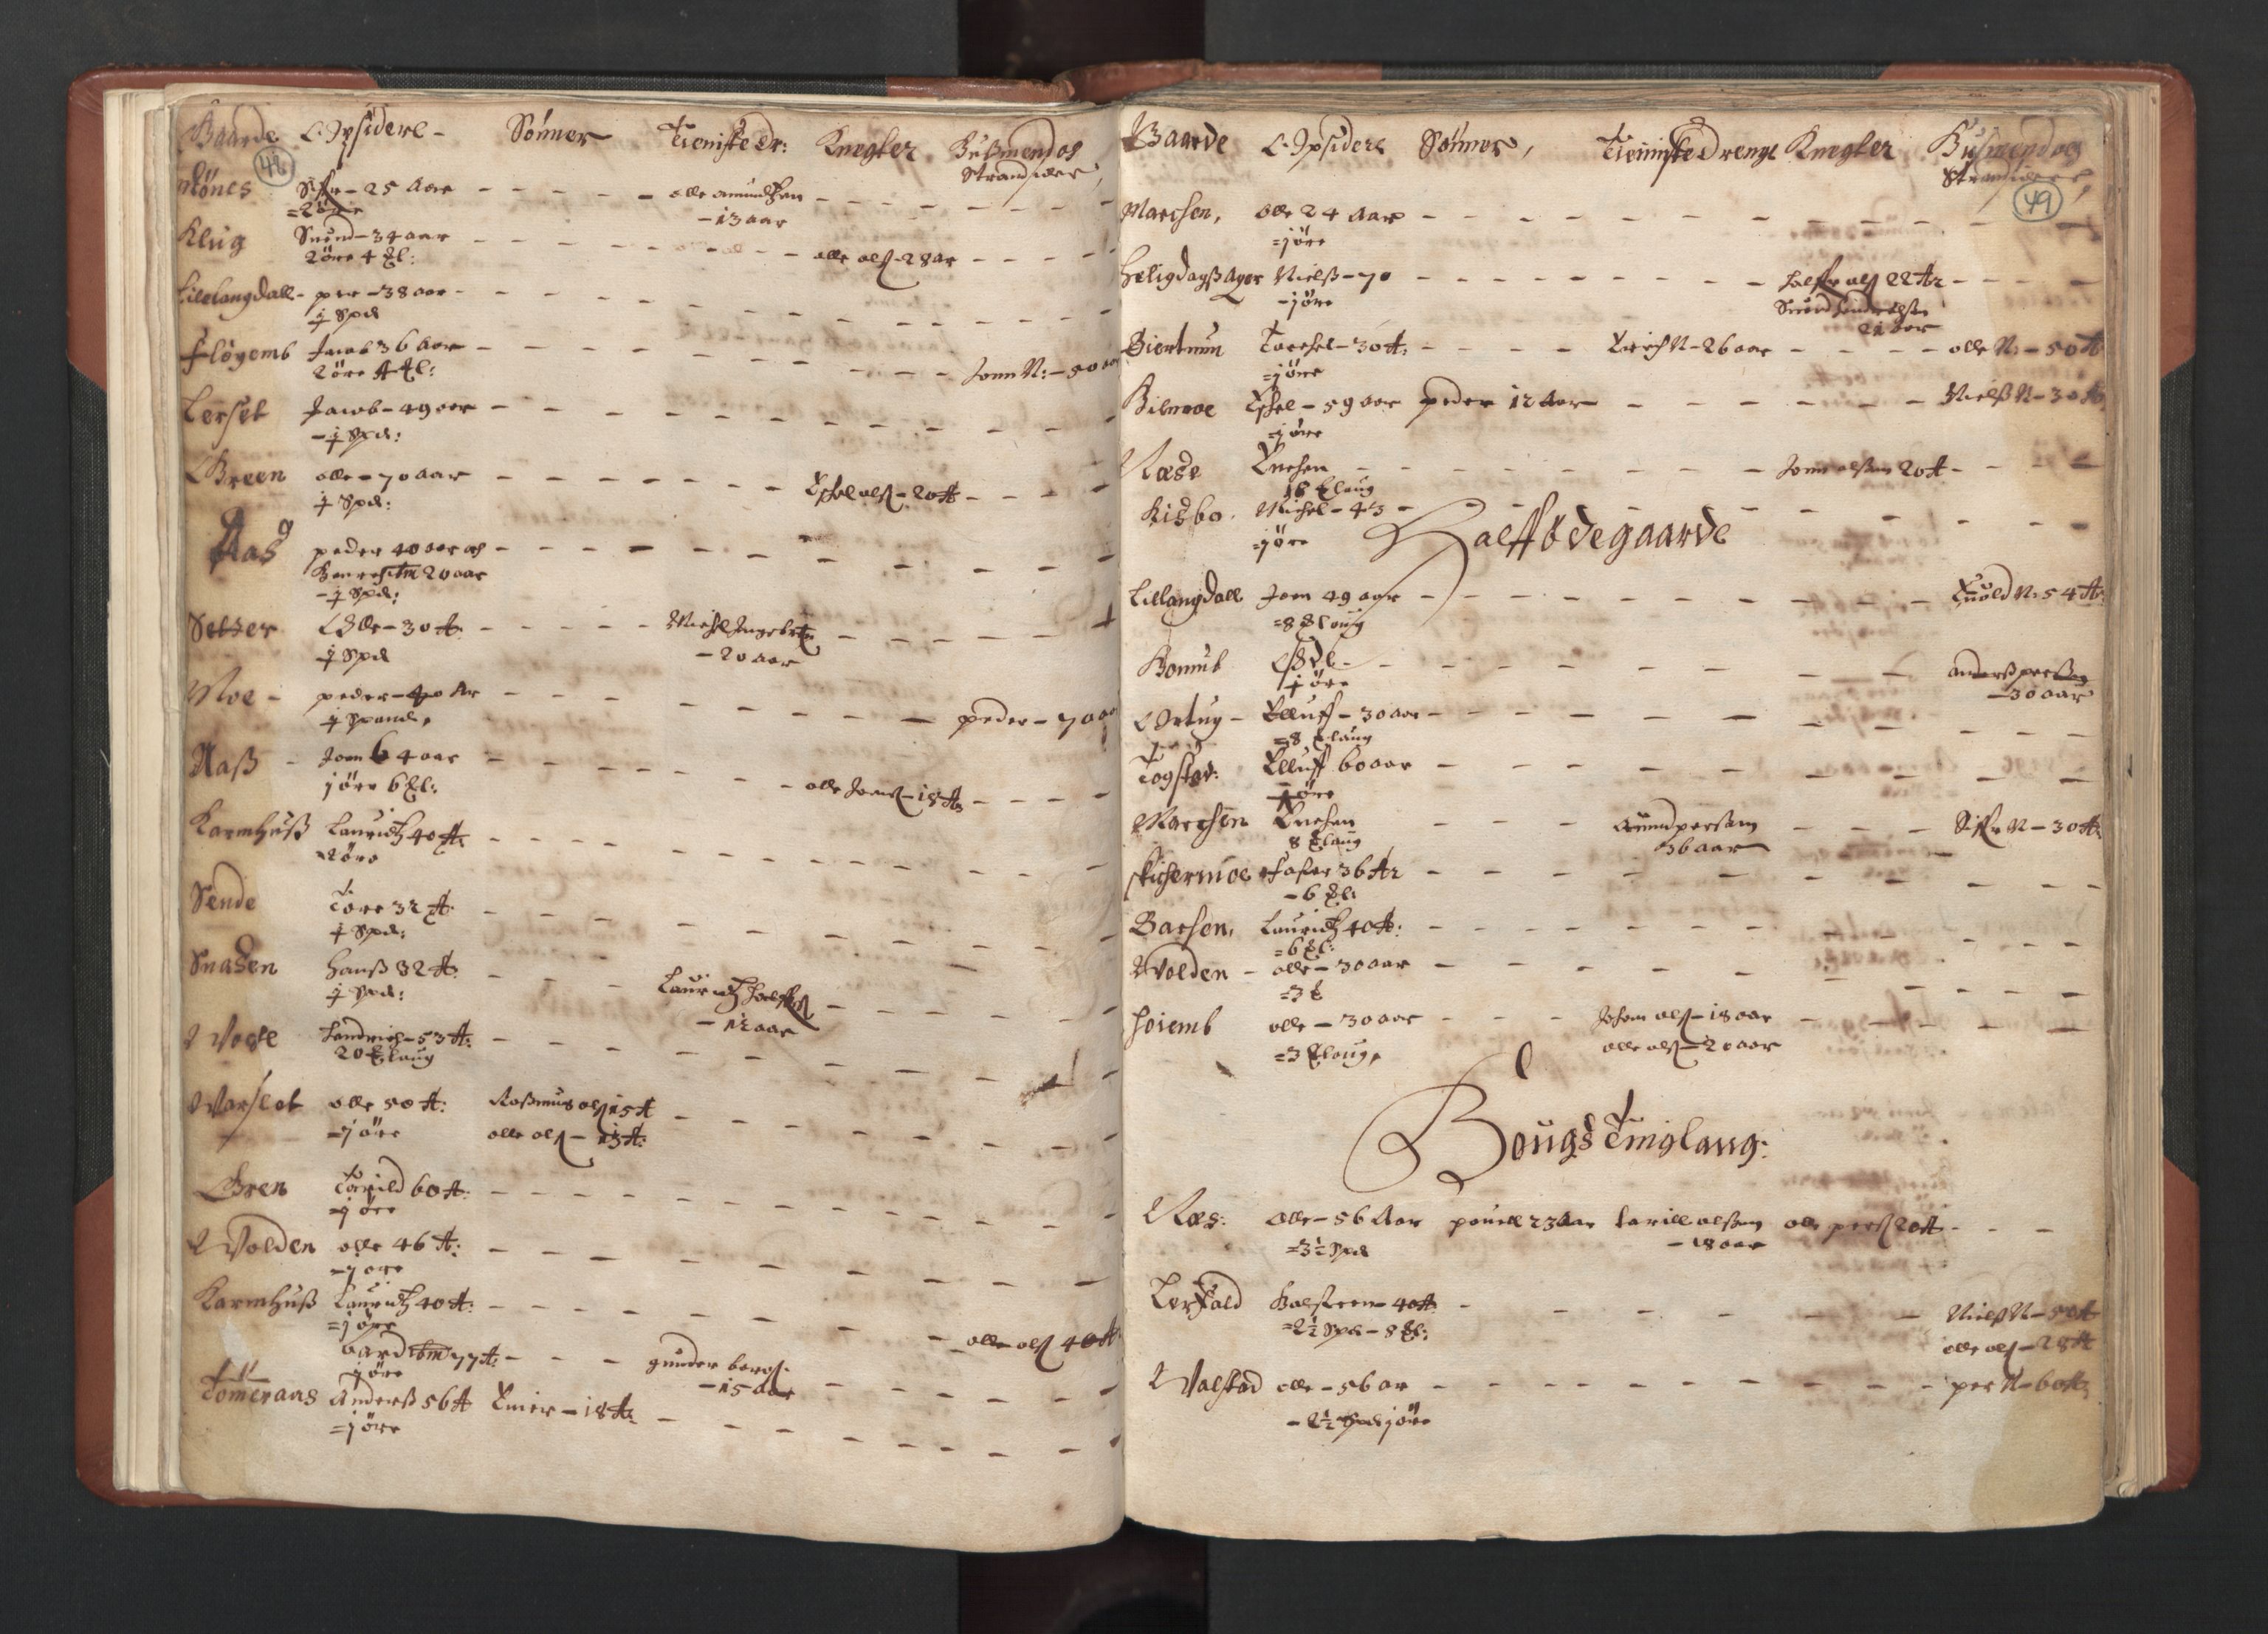 RA, Bailiff's Census 1664-1666, no. 19: Fosen fogderi, Inderøy fogderi, Selbu fogderi, Namdal fogderi and Stjørdal fogderi, 1664-1665, p. 48-49